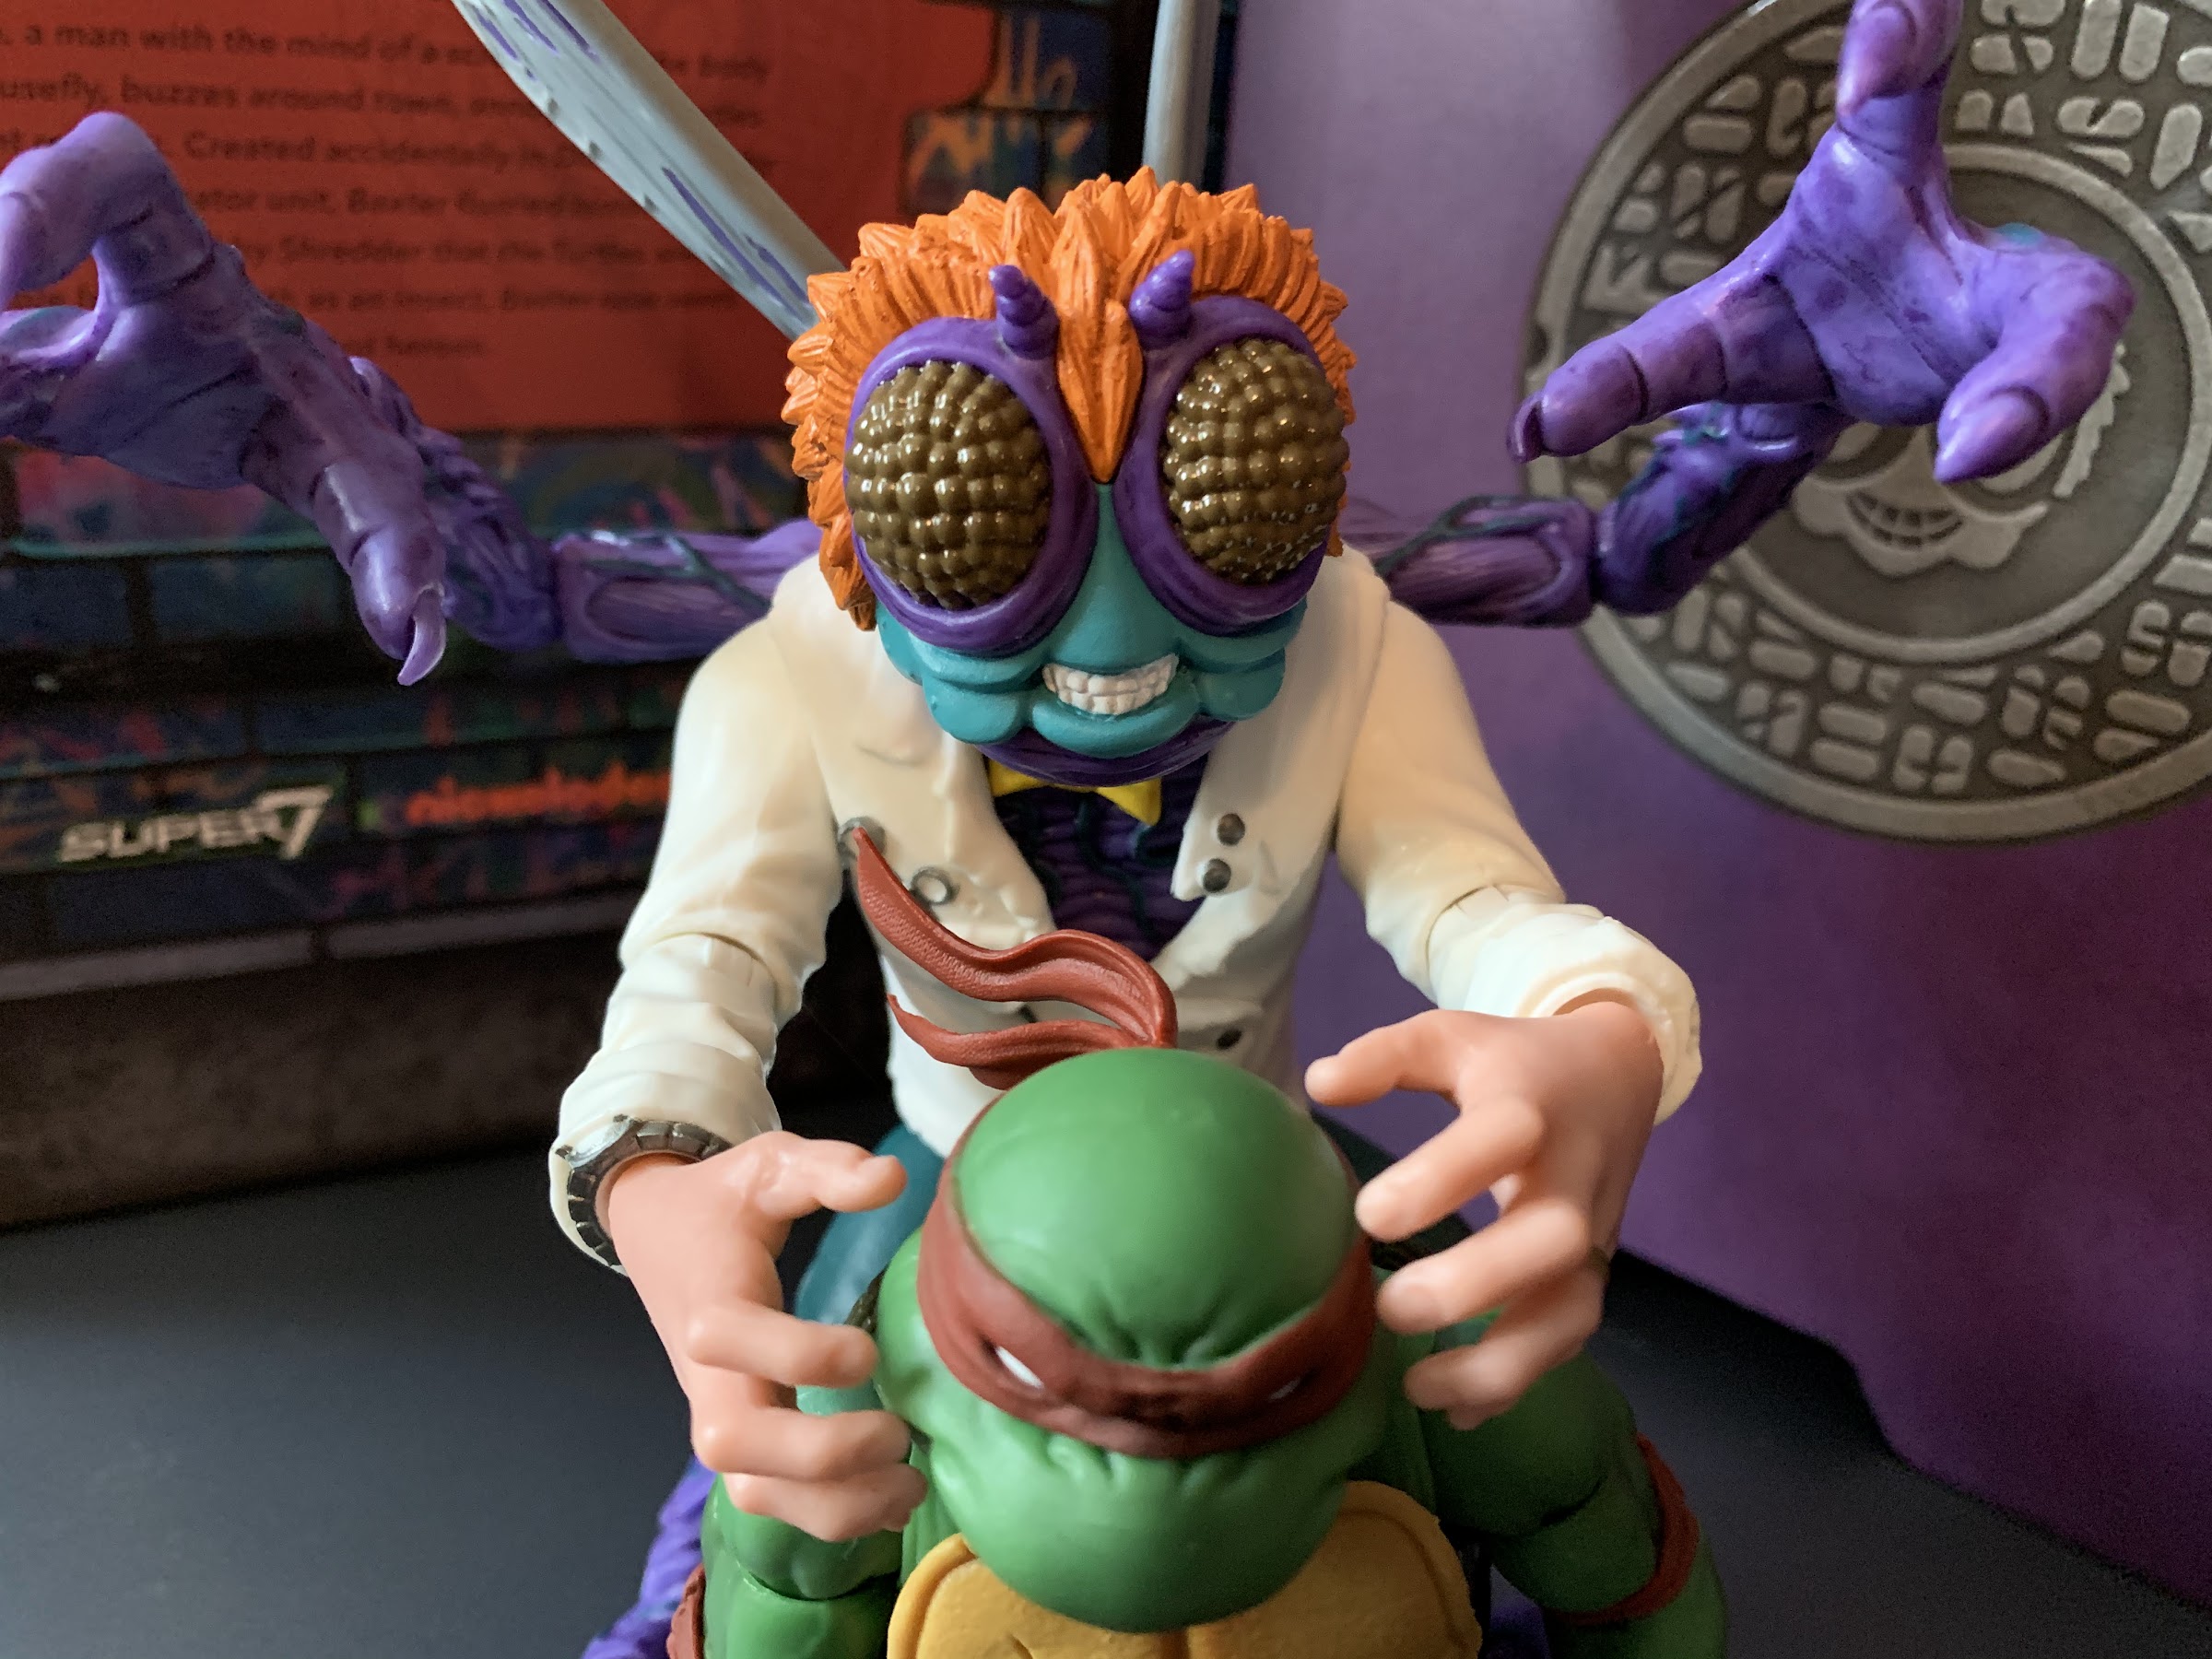 Super7 TMNT Ultimates Donatello Purple Ninja Turtle Figure